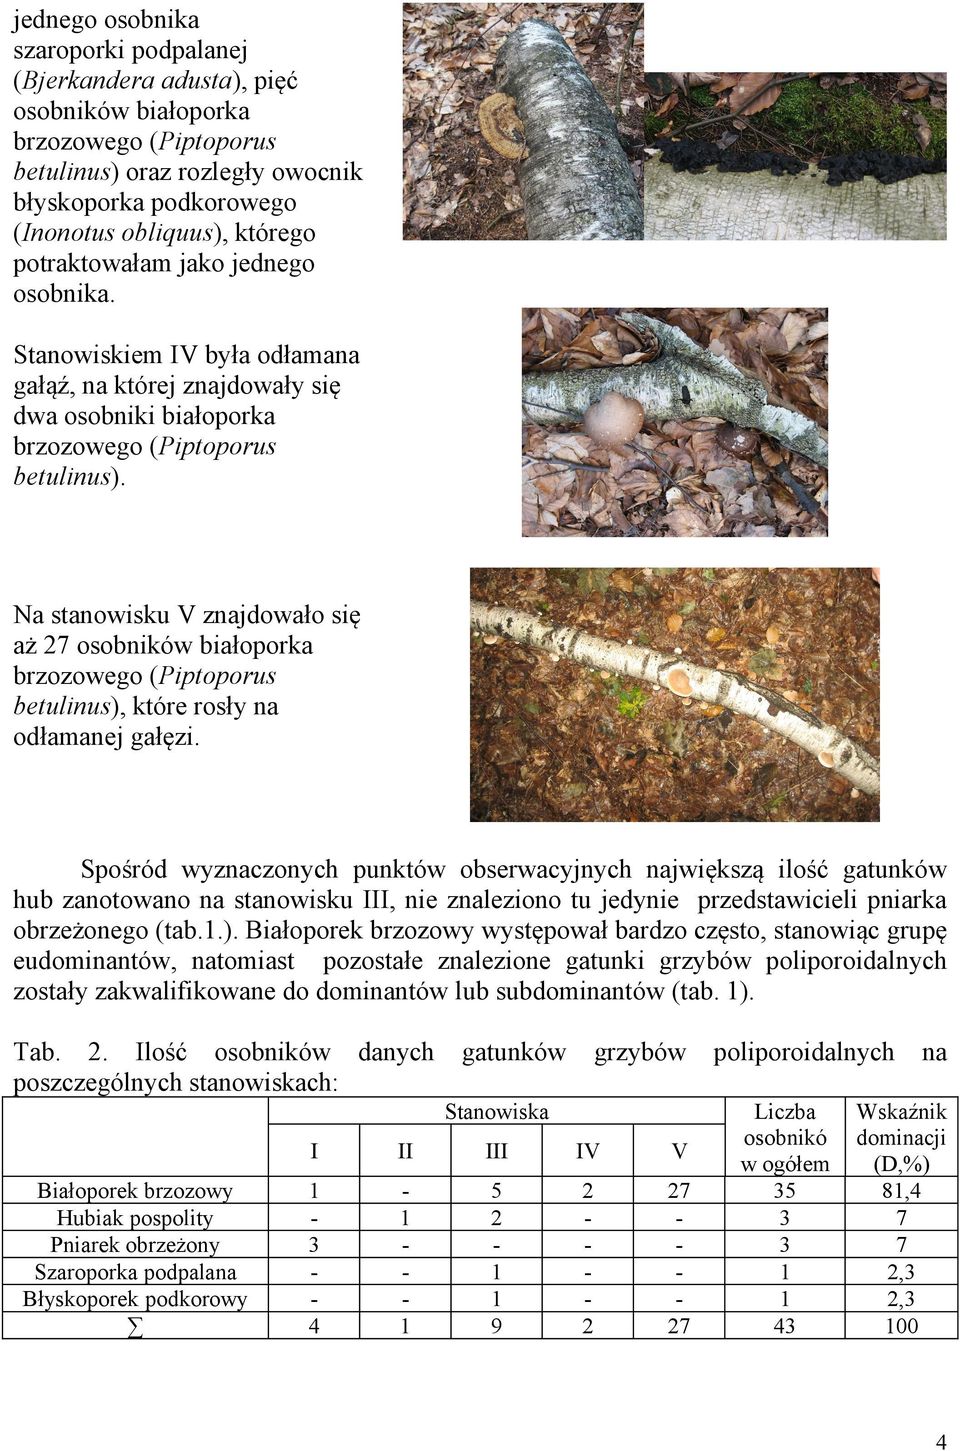 Na stanowisku V znajdowało się aż 7 osobników białoporka brzozowego (Piptoporus betulinus), które rosły na odłamanej gałęzi.